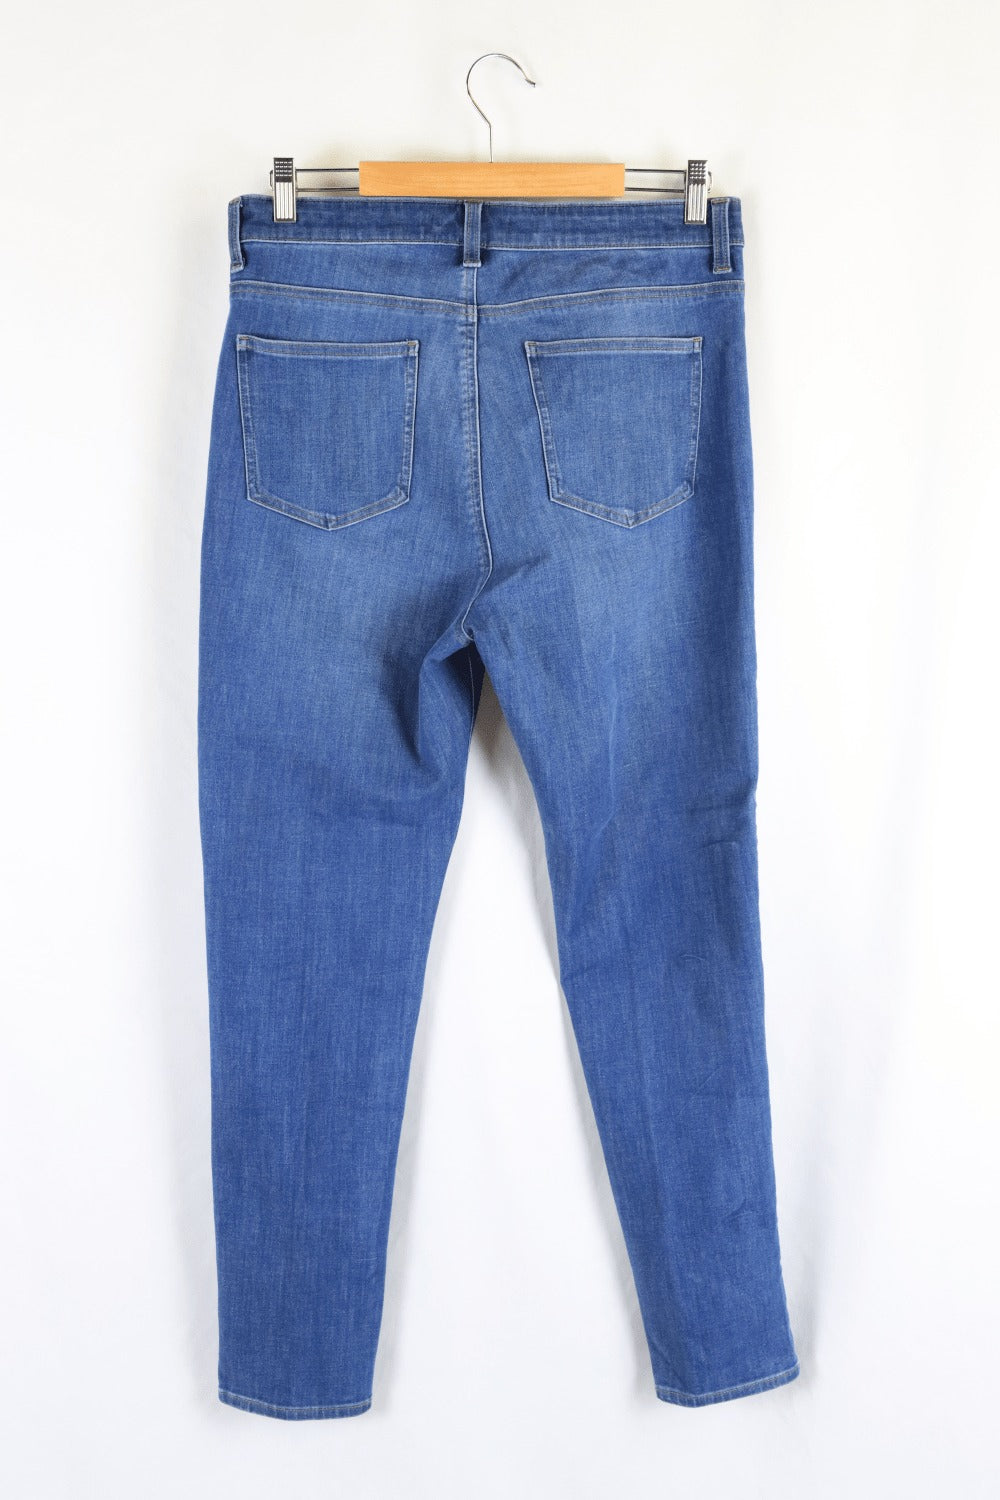 Uniqlo Blue Jeans 14